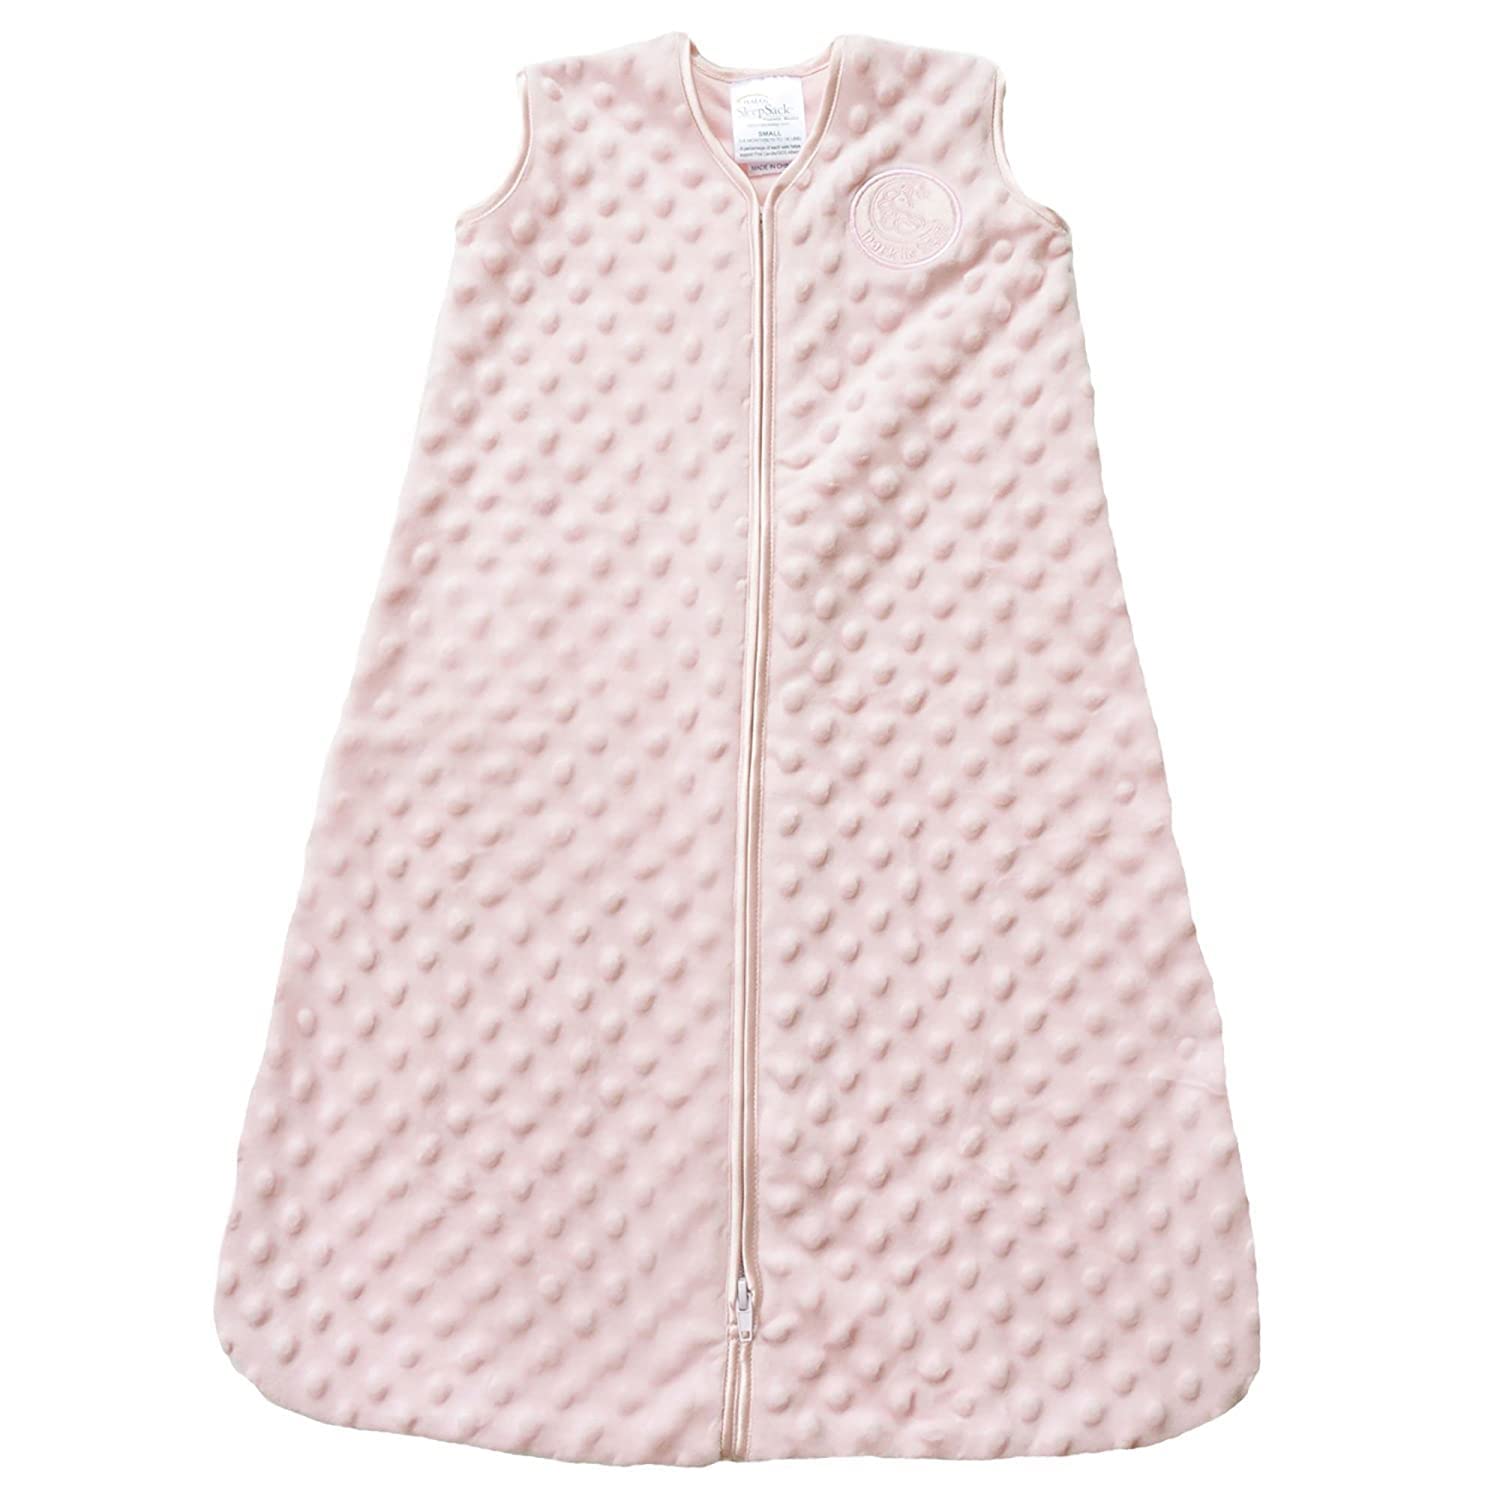 HALO Sleepsack Plush Dot Velboa Wearable Blanket, TOG 1.5, Pink, Medium